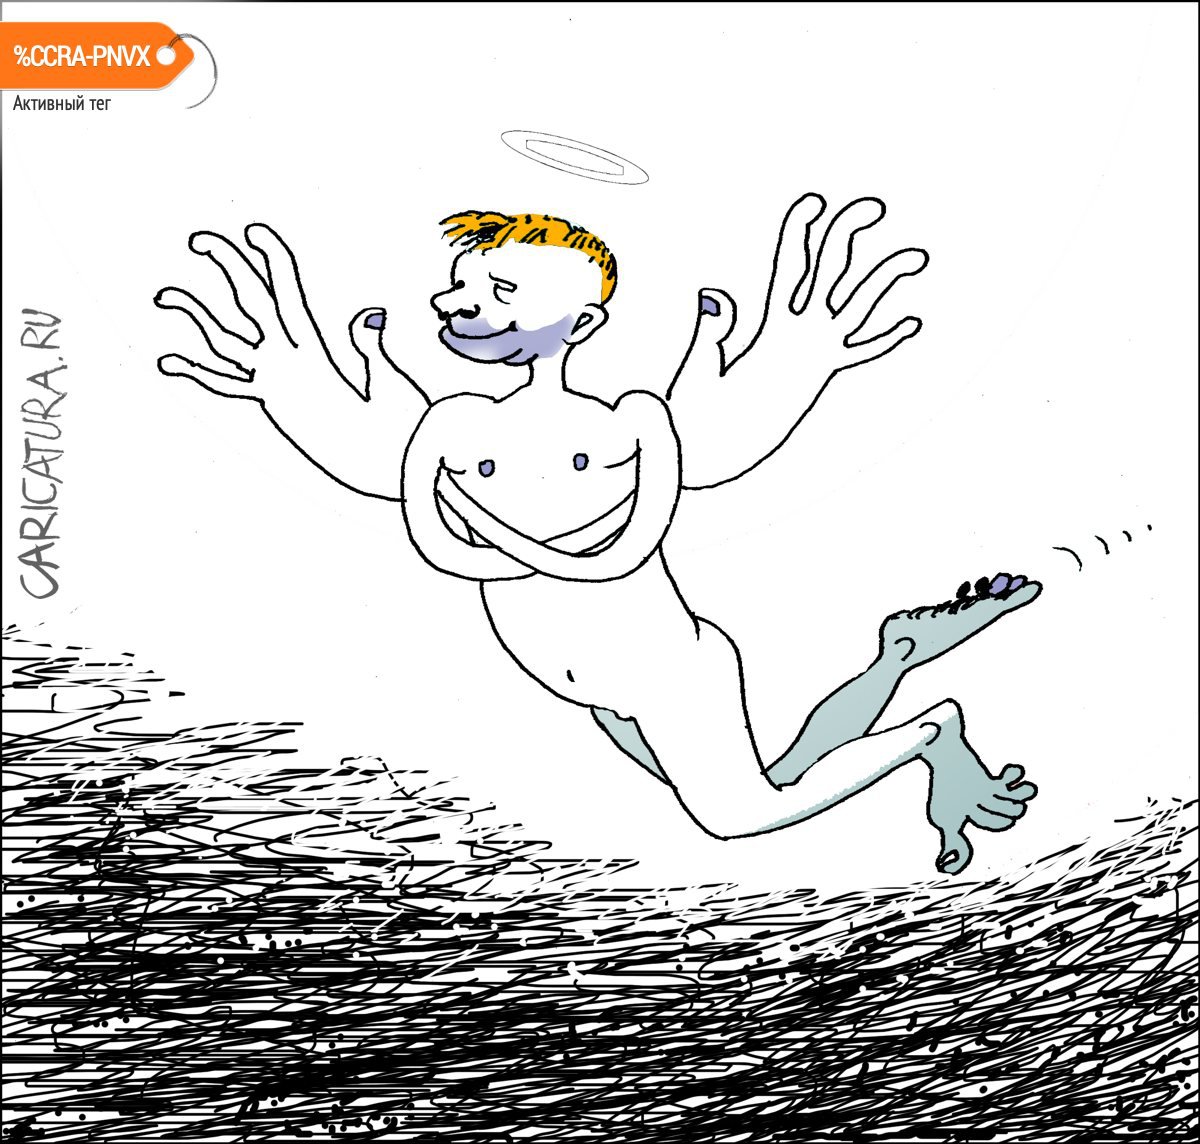 Карикатура "Самомнение", Александр Уваров